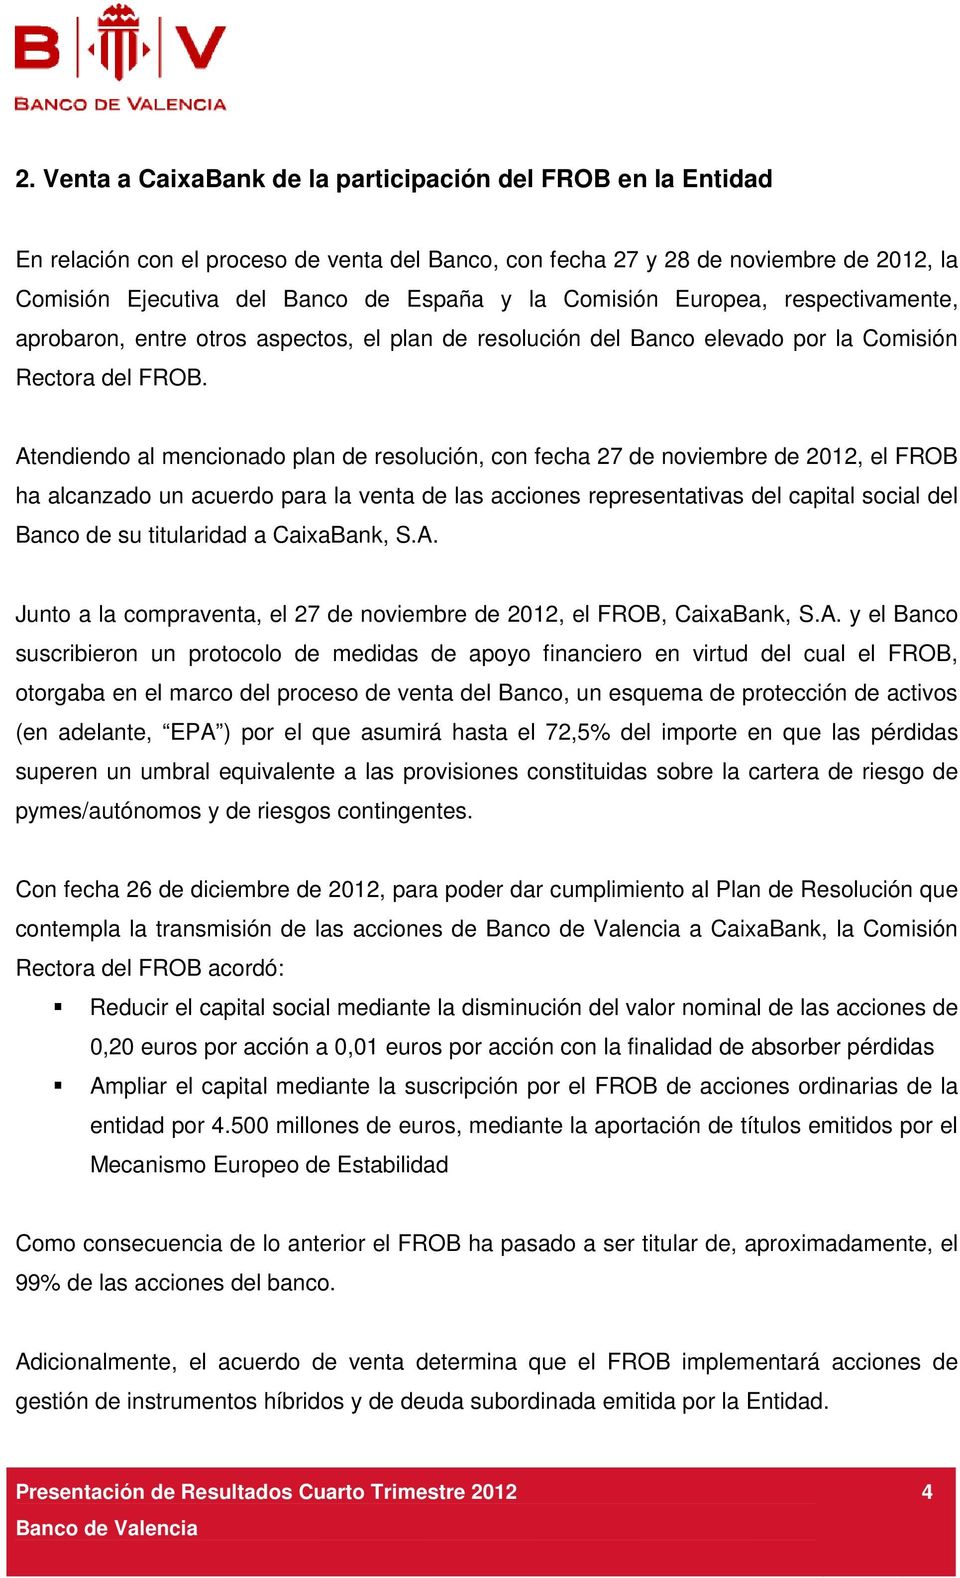 Atendiendo al mencionado plan de resolución, con fecha 27 de noviembre de 2012, el FROB ha alcanzado un acuerdo para la venta de las acciones representativas del capital social del Banco de su